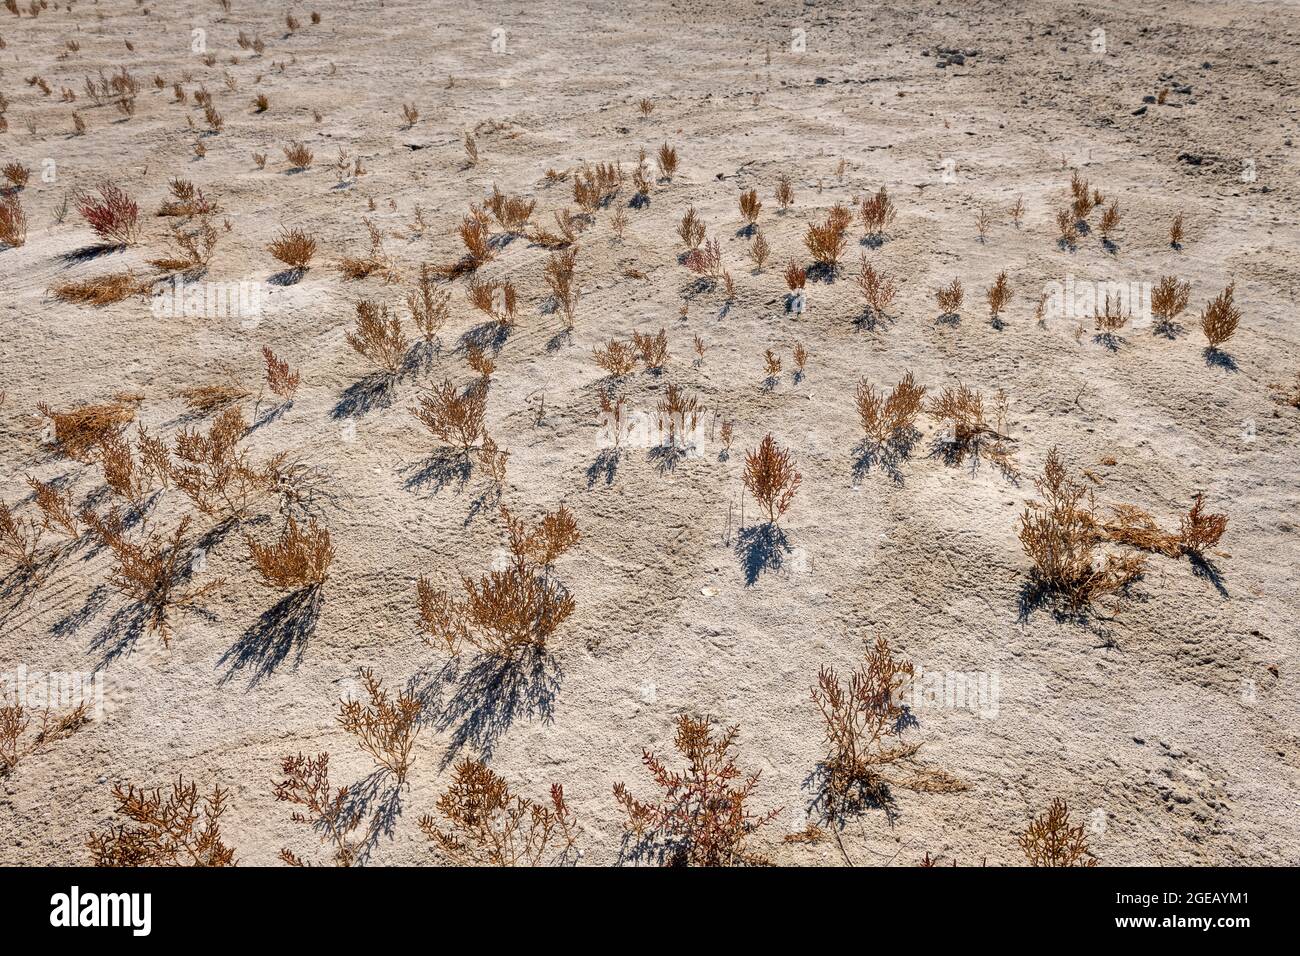 Plantas que mueren o mueren en tierras áridas debido al cambio climático. Foto de stock